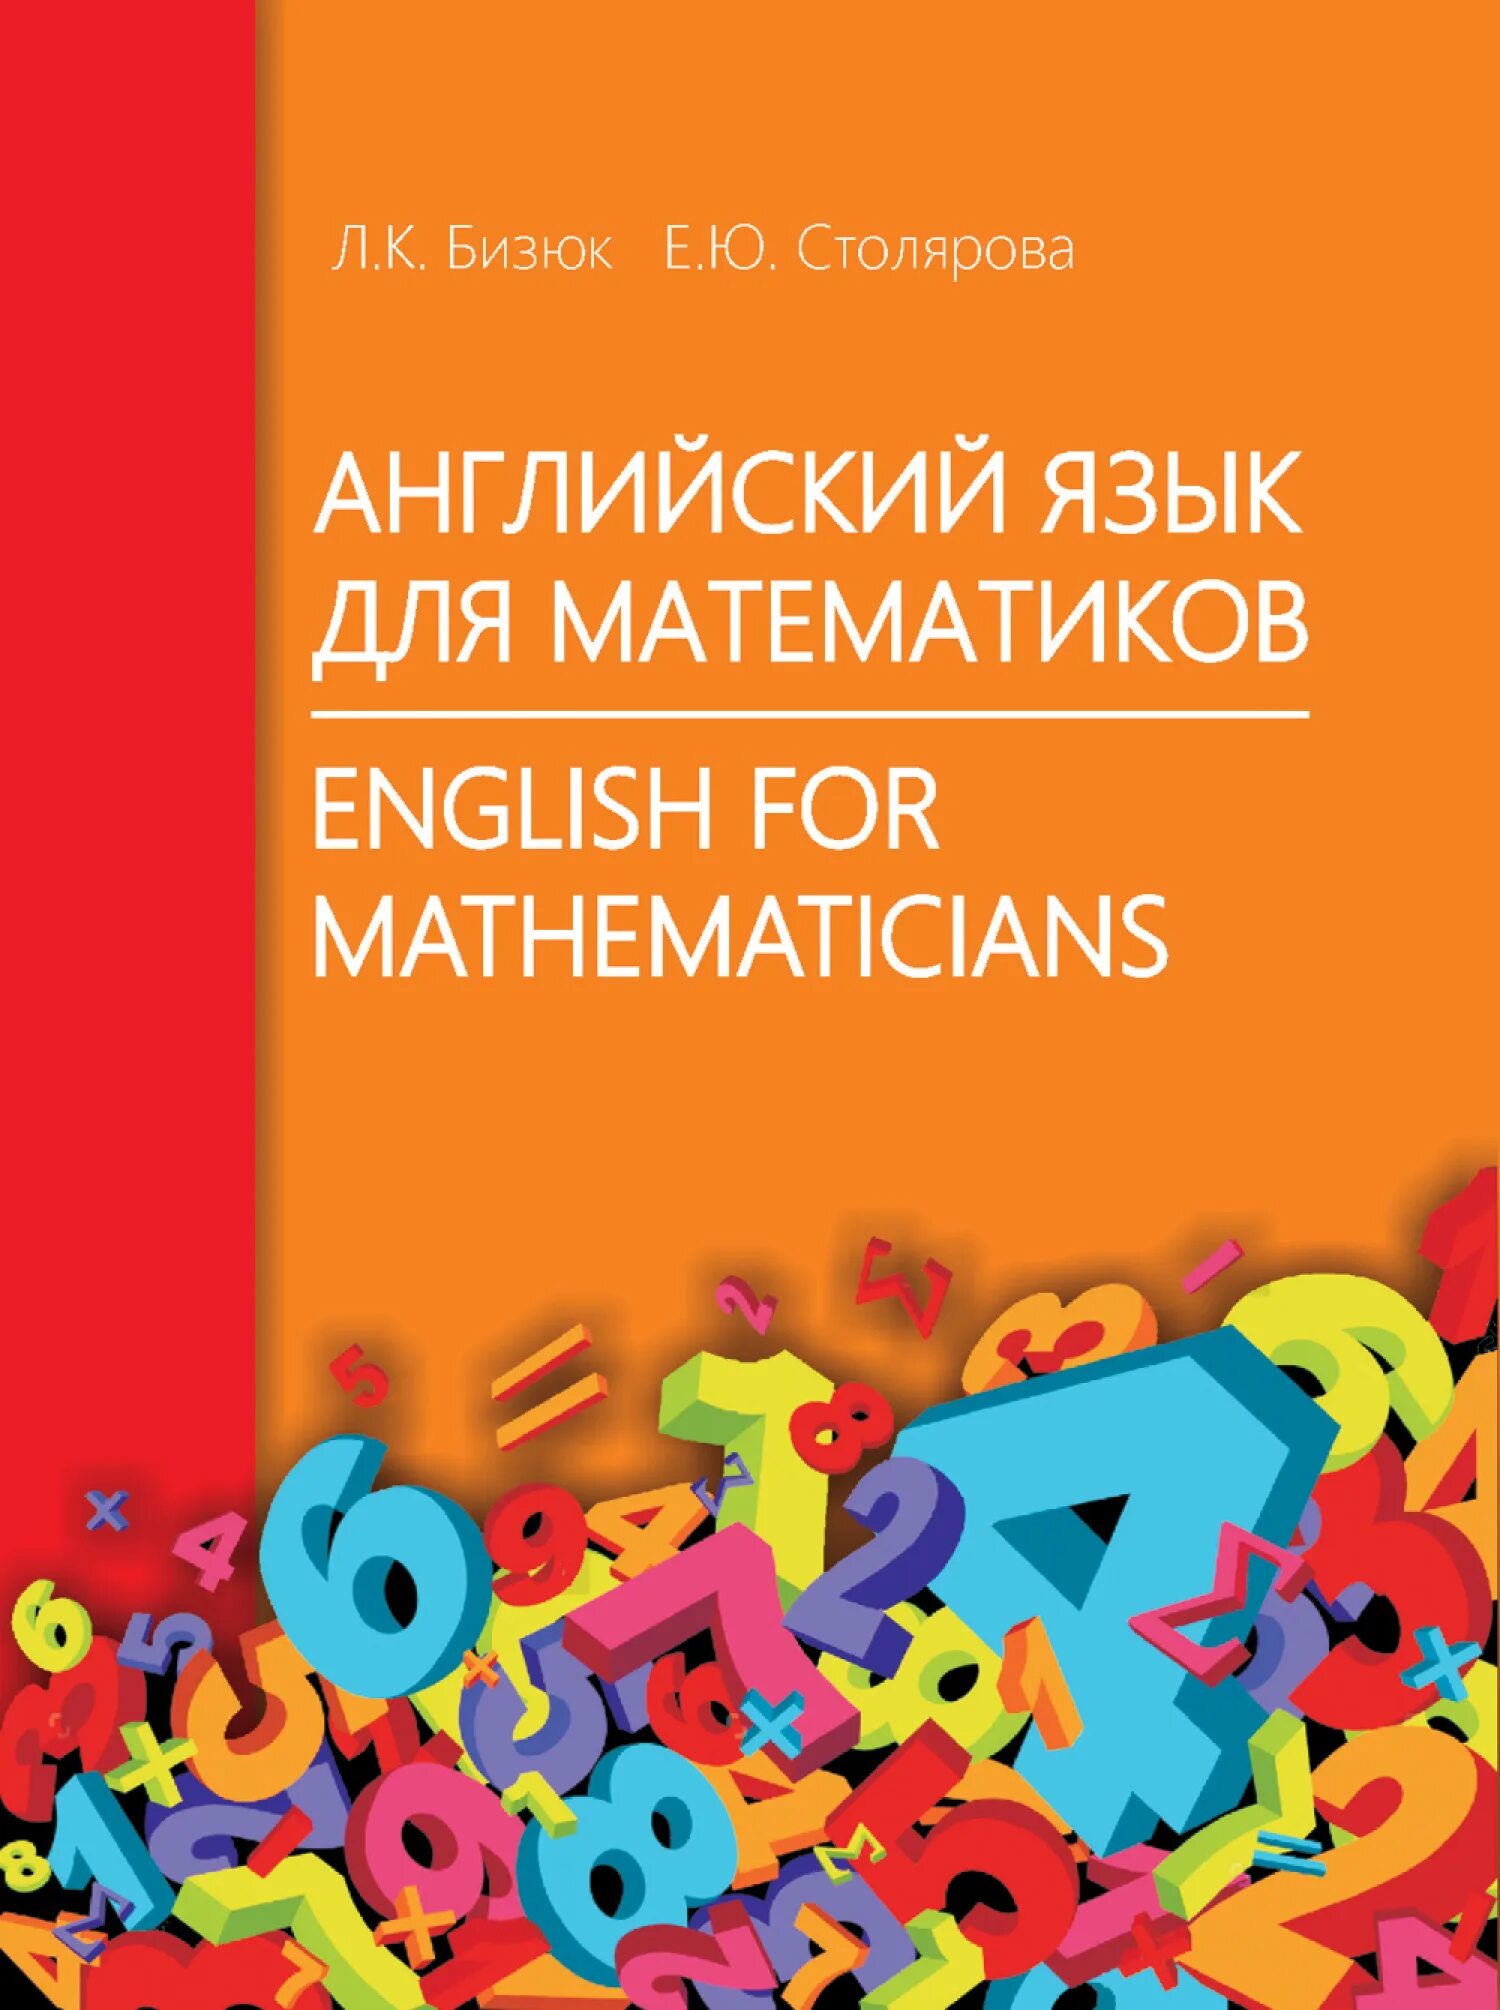 English mathematics. Английский для математиков. Книга английский для математиков. Книги по математике на английском. Математика на английском языке.